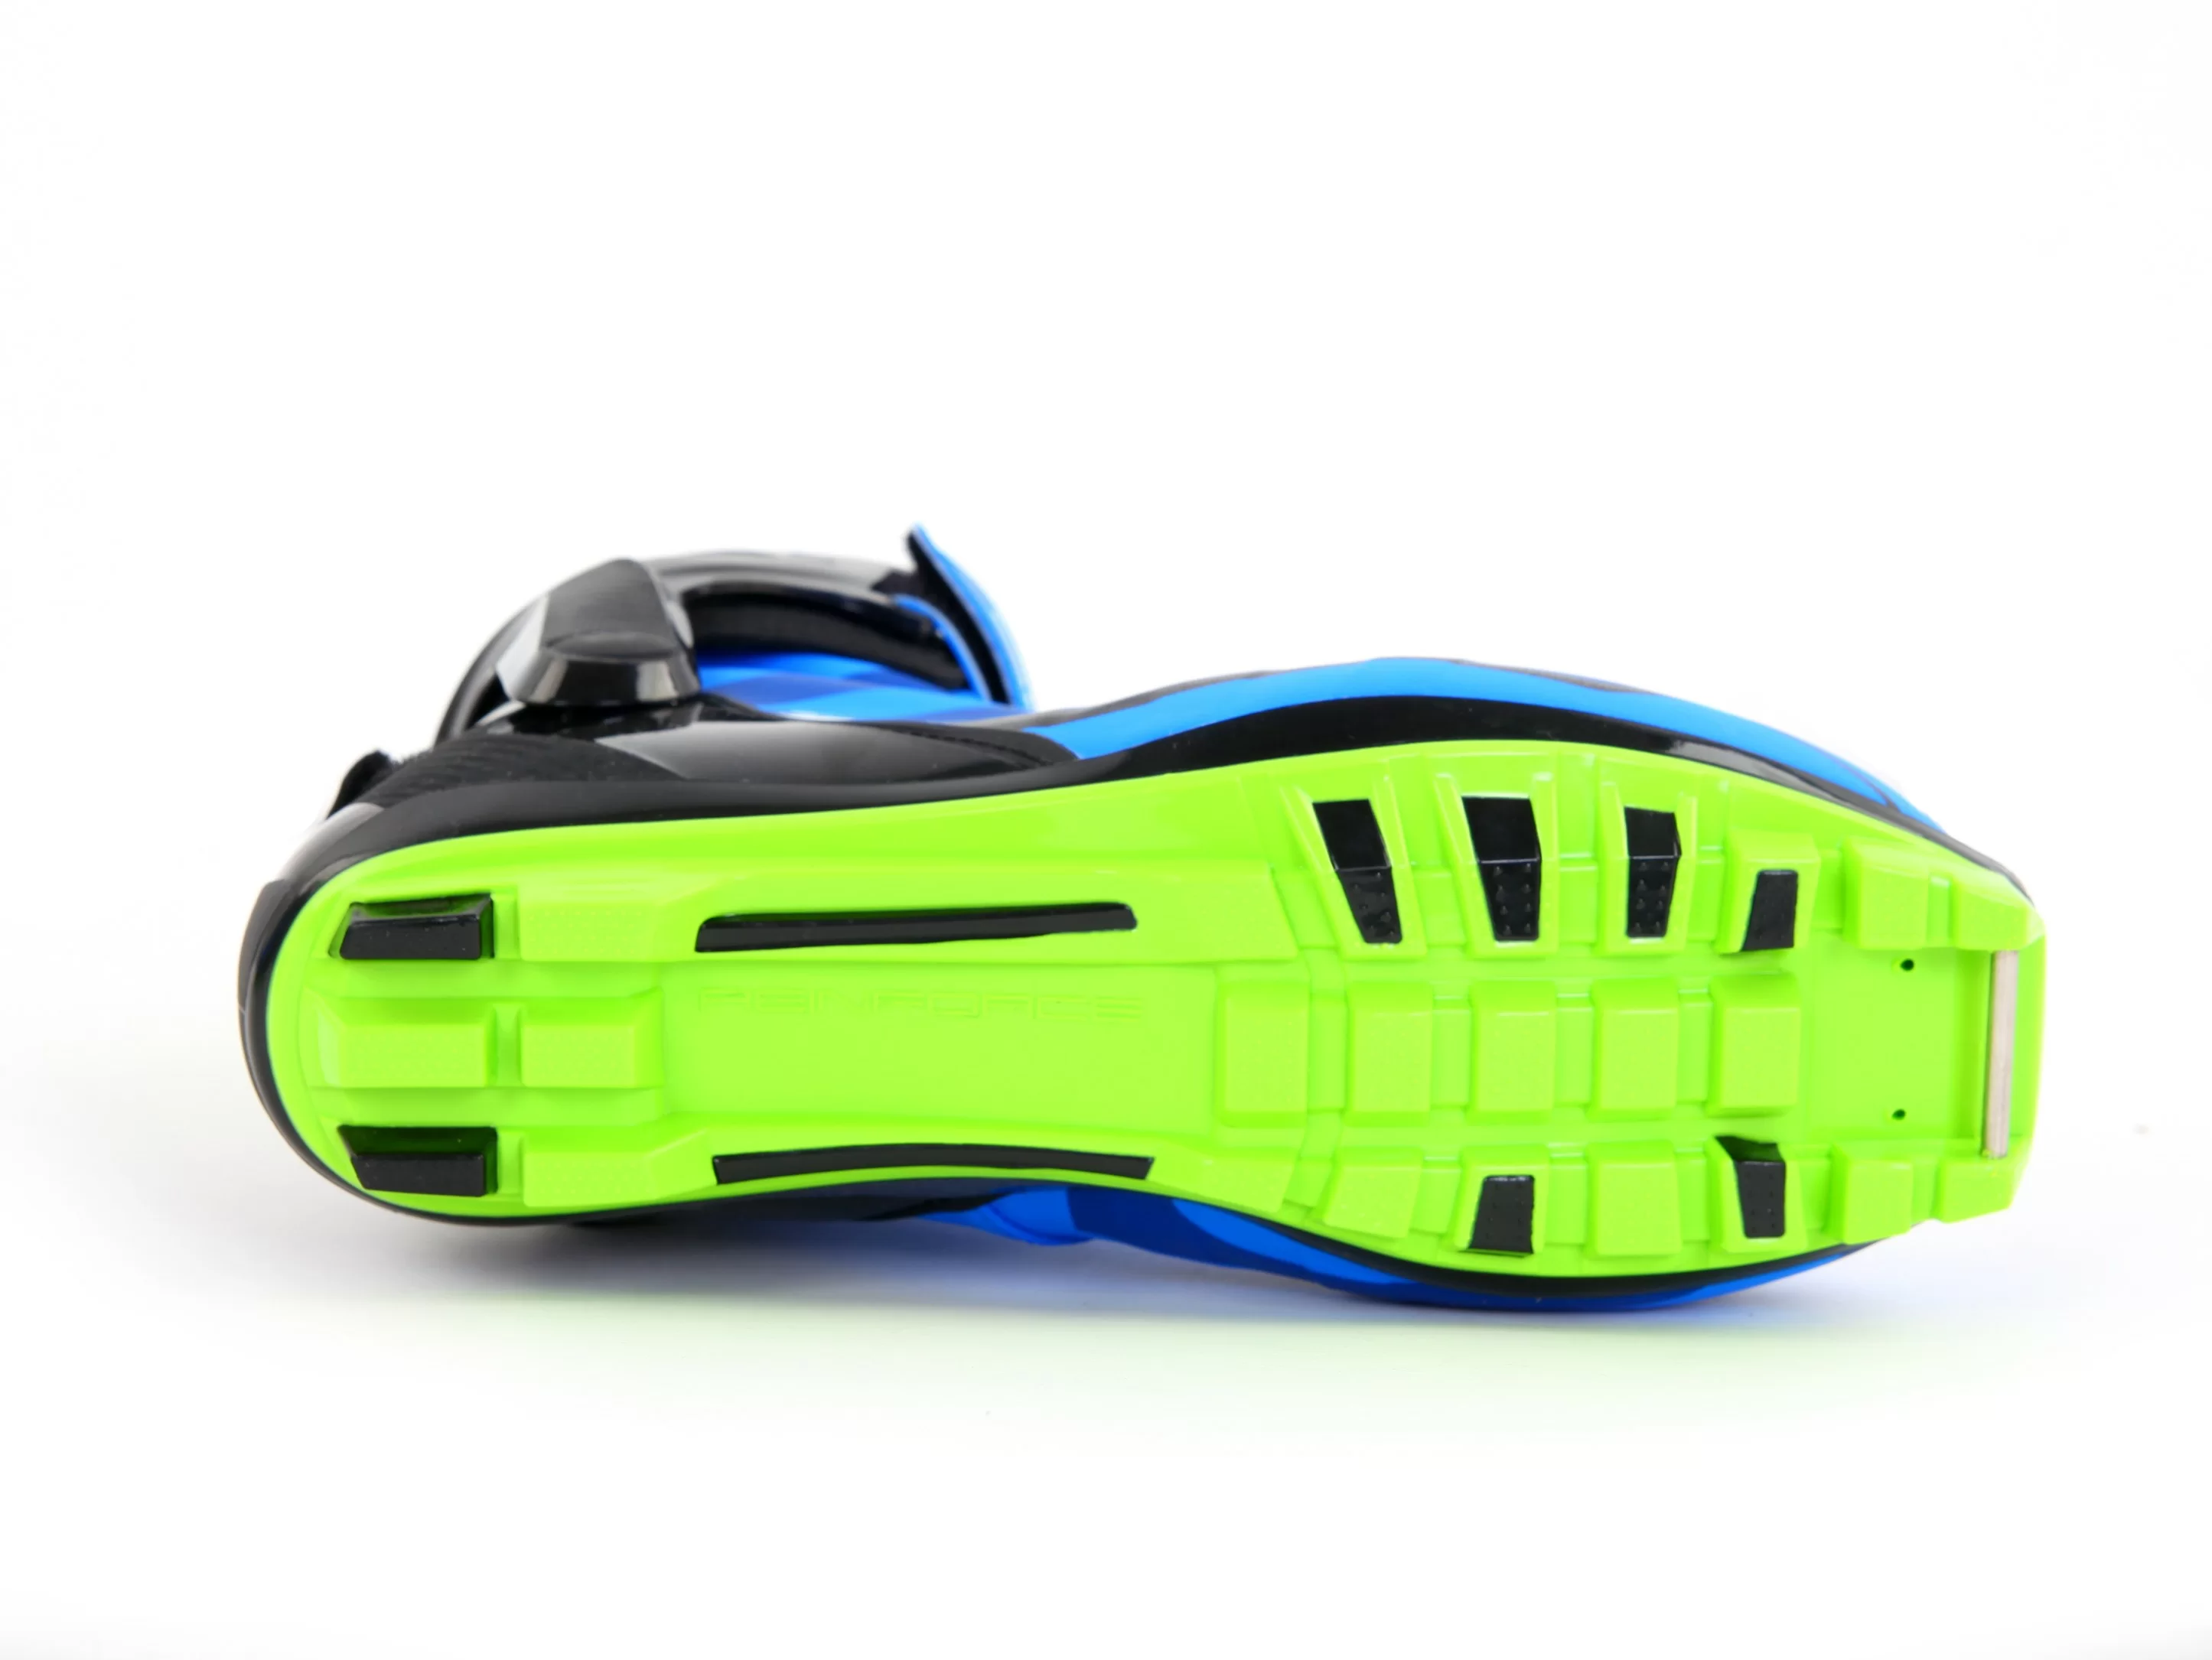 Реальное фото Ботинки лыжные Spine Concept Skate Pro 297 NNN от магазина СпортСЕ